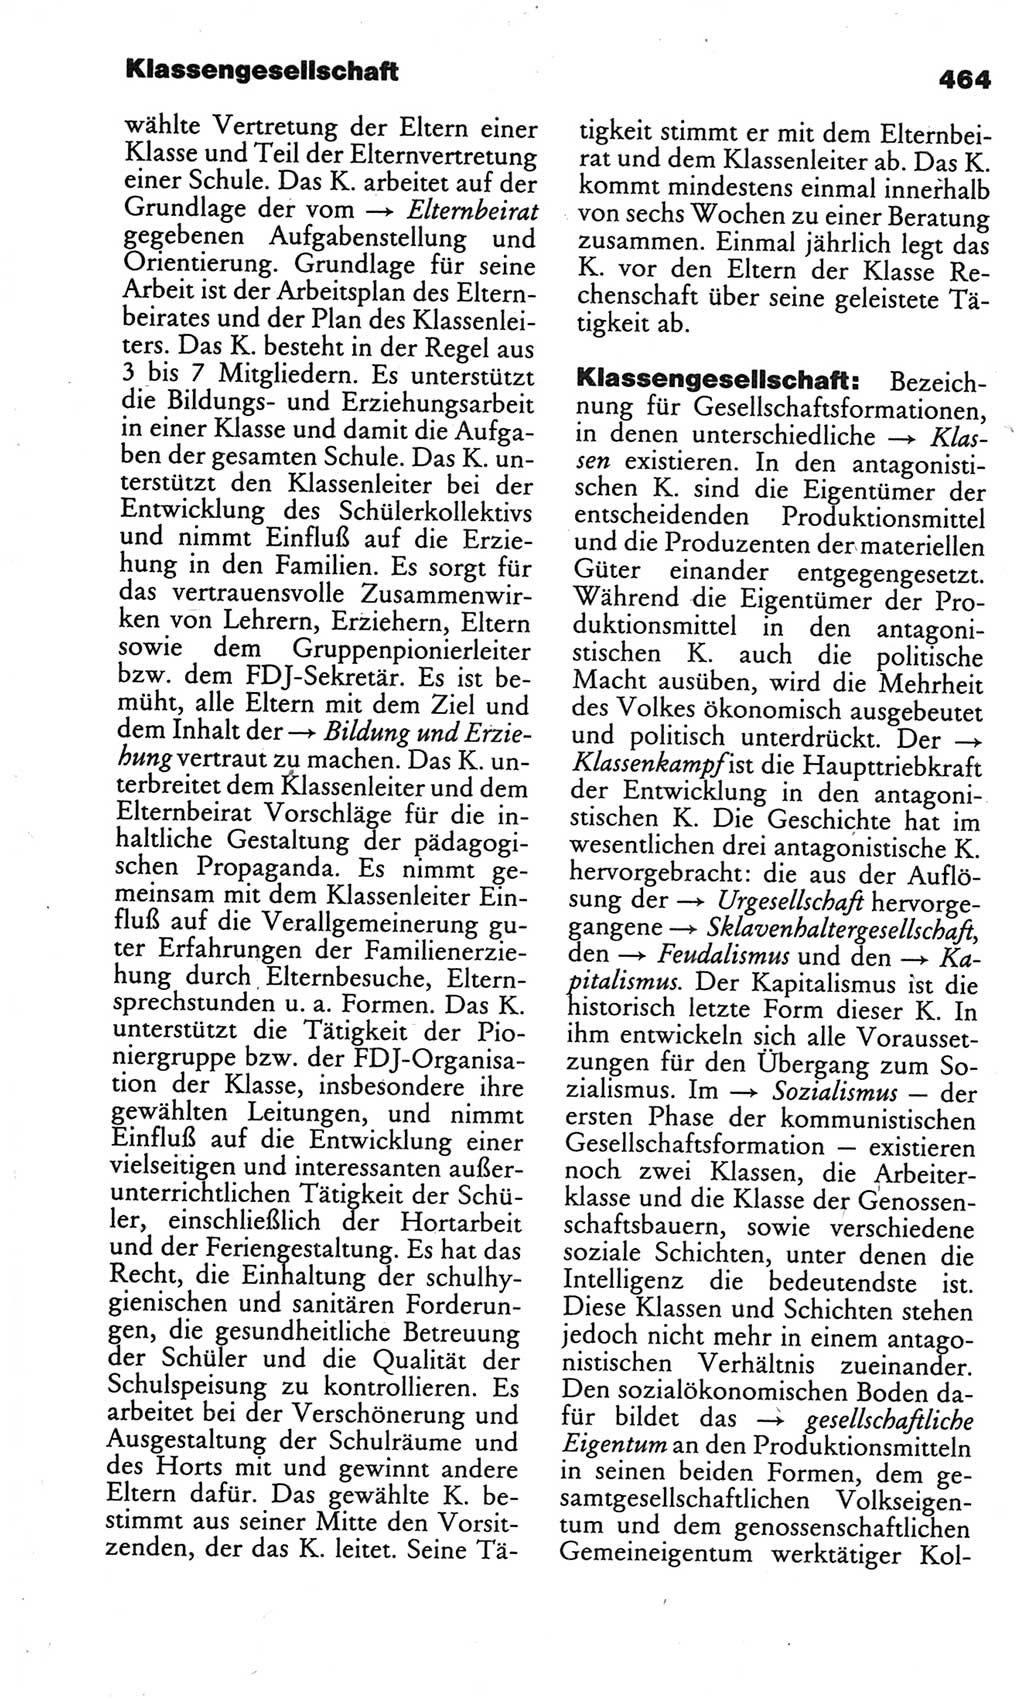 Kleines politisches Wörterbuch [Deutsche Demokratische Republik (DDR)] 1986, Seite 464 (Kl. pol. Wb. DDR 1986, S. 464)